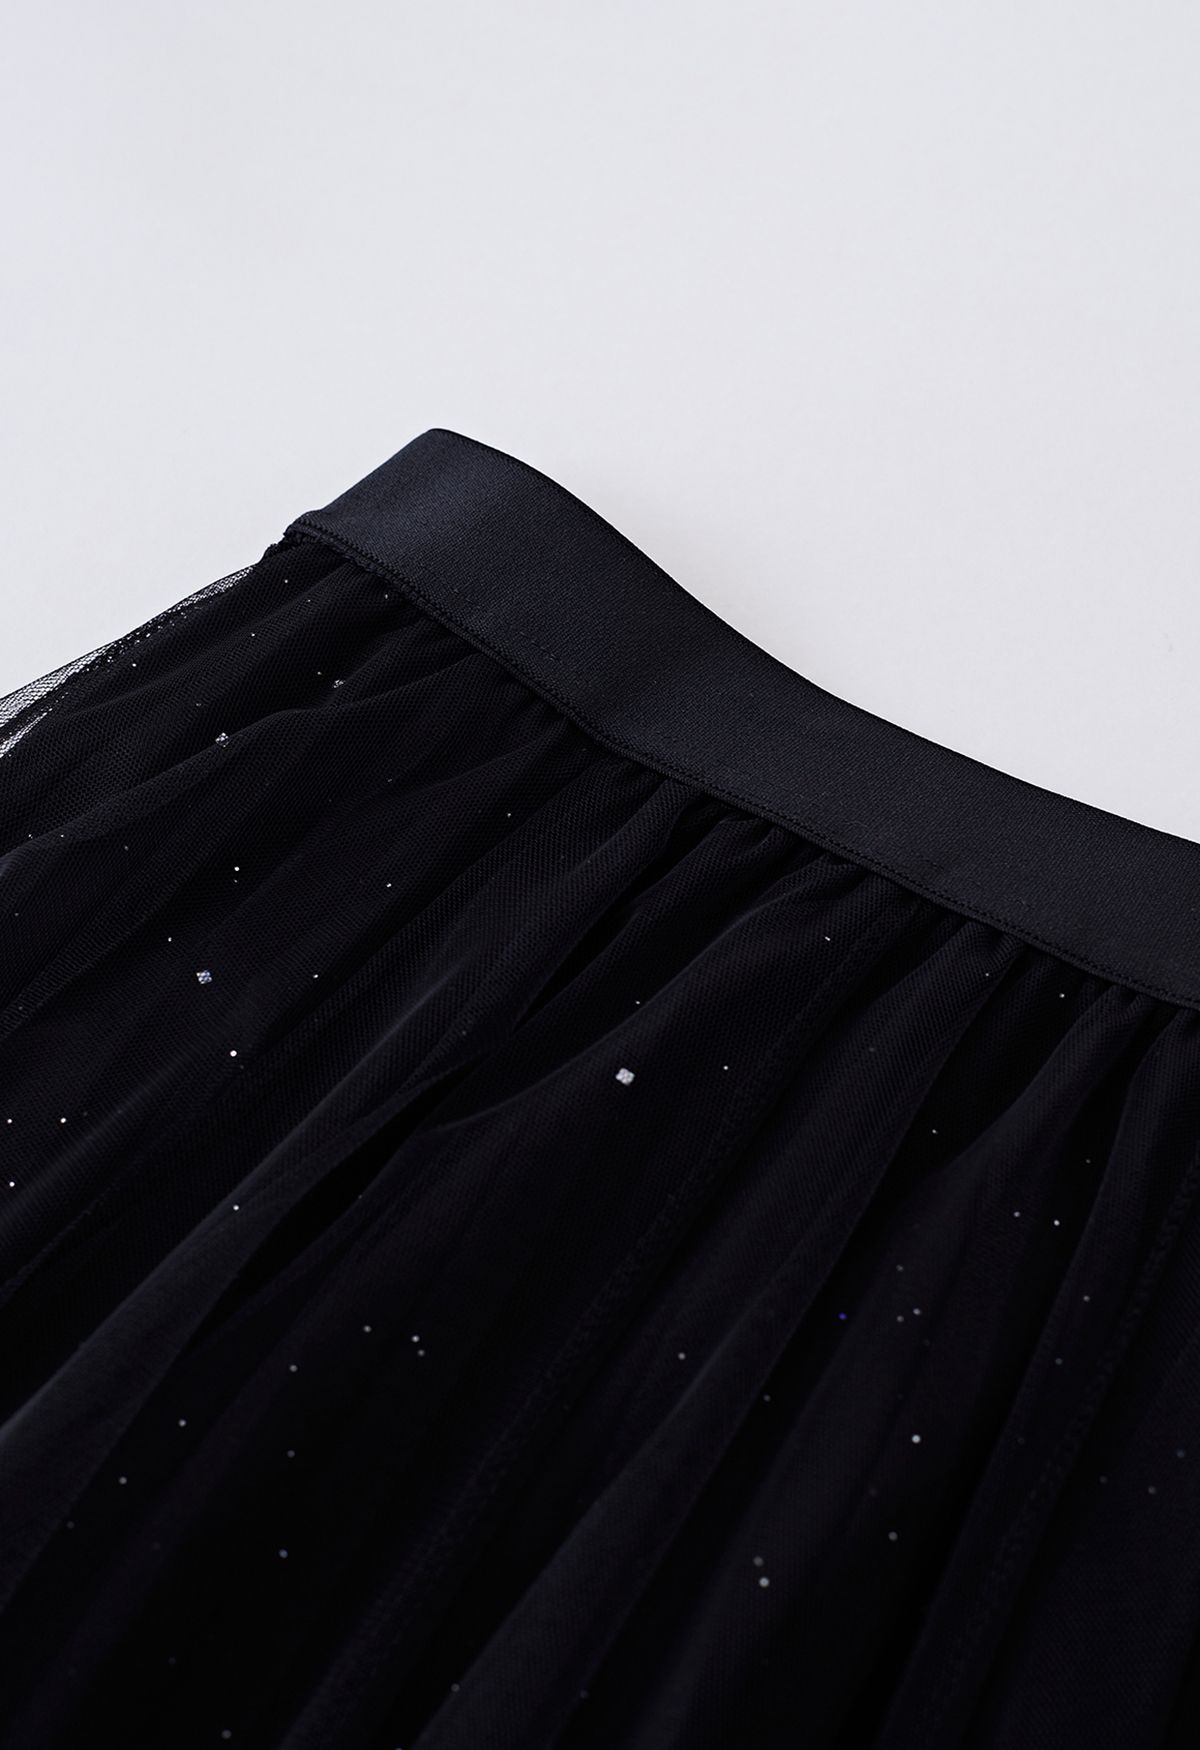 Venus Glitter Mesh Tulle Midi Skirt in Black